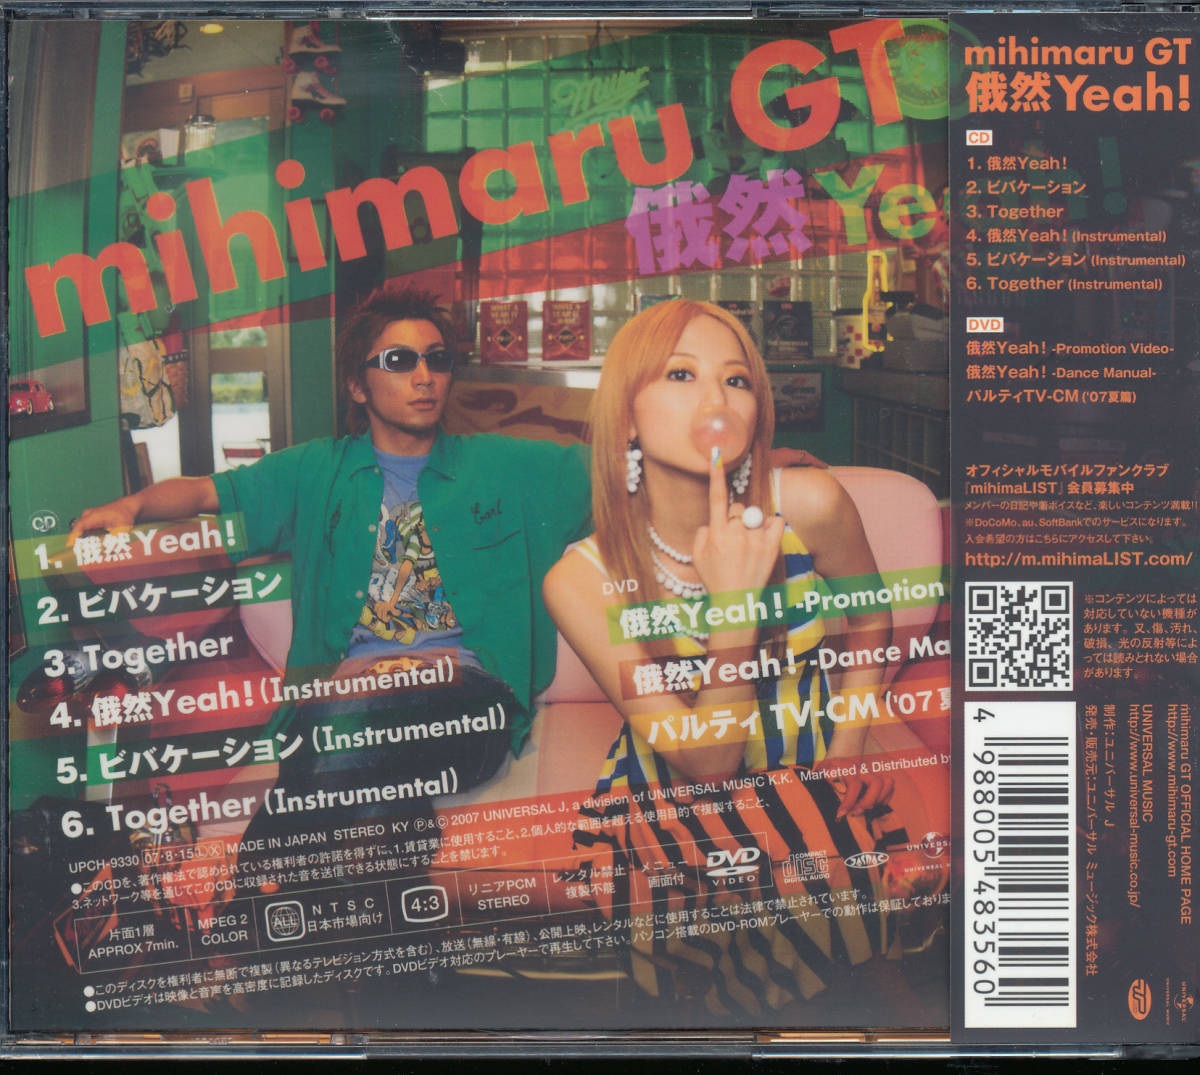 ヤフオク! - ミヒマルGT mihimaru GT/俄然Yeah CD+DVD いつも...